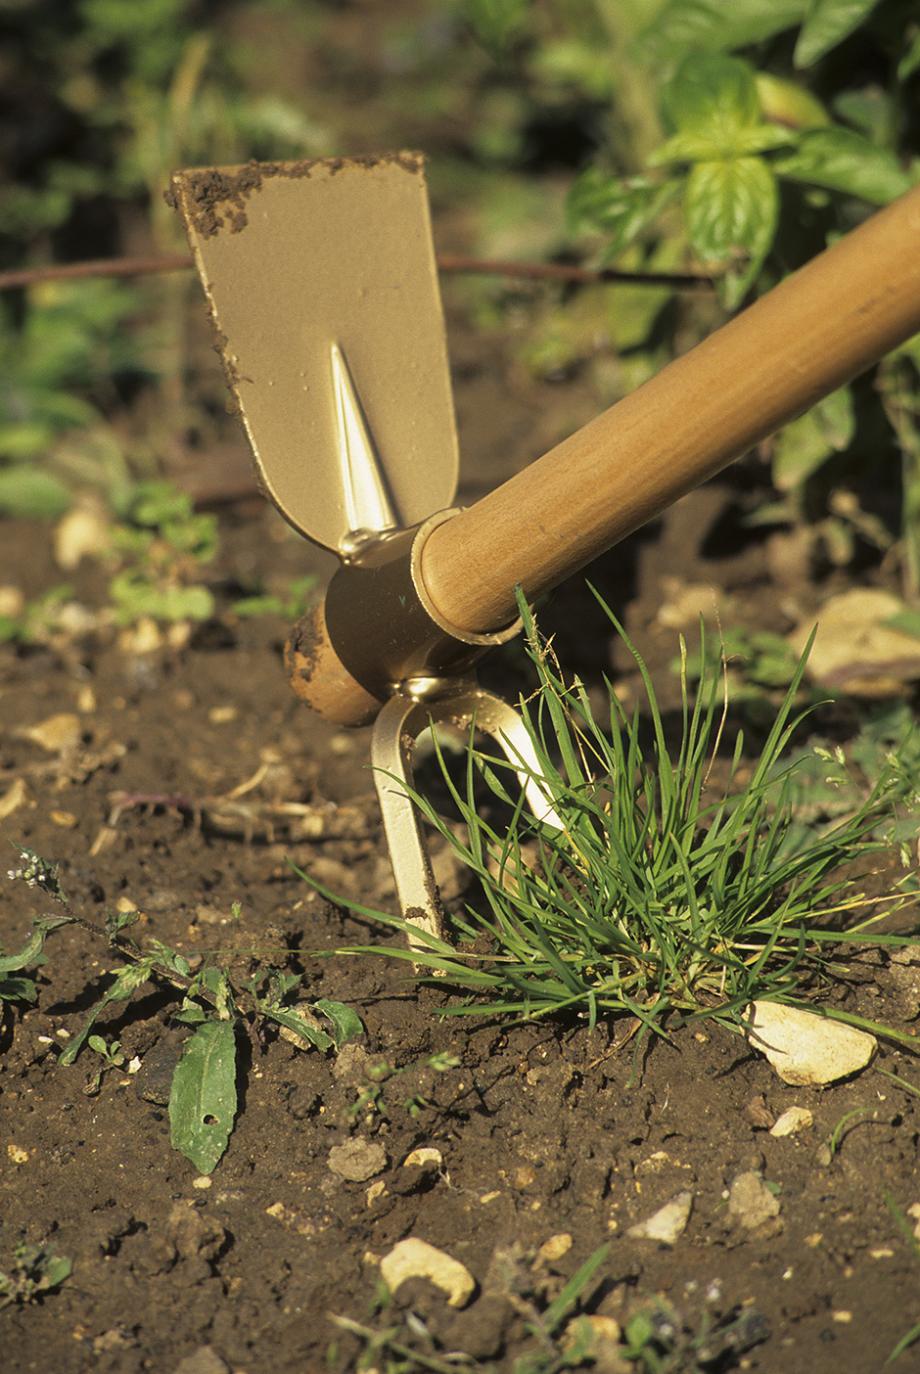 Les outils de jardin pour gratter et désherber